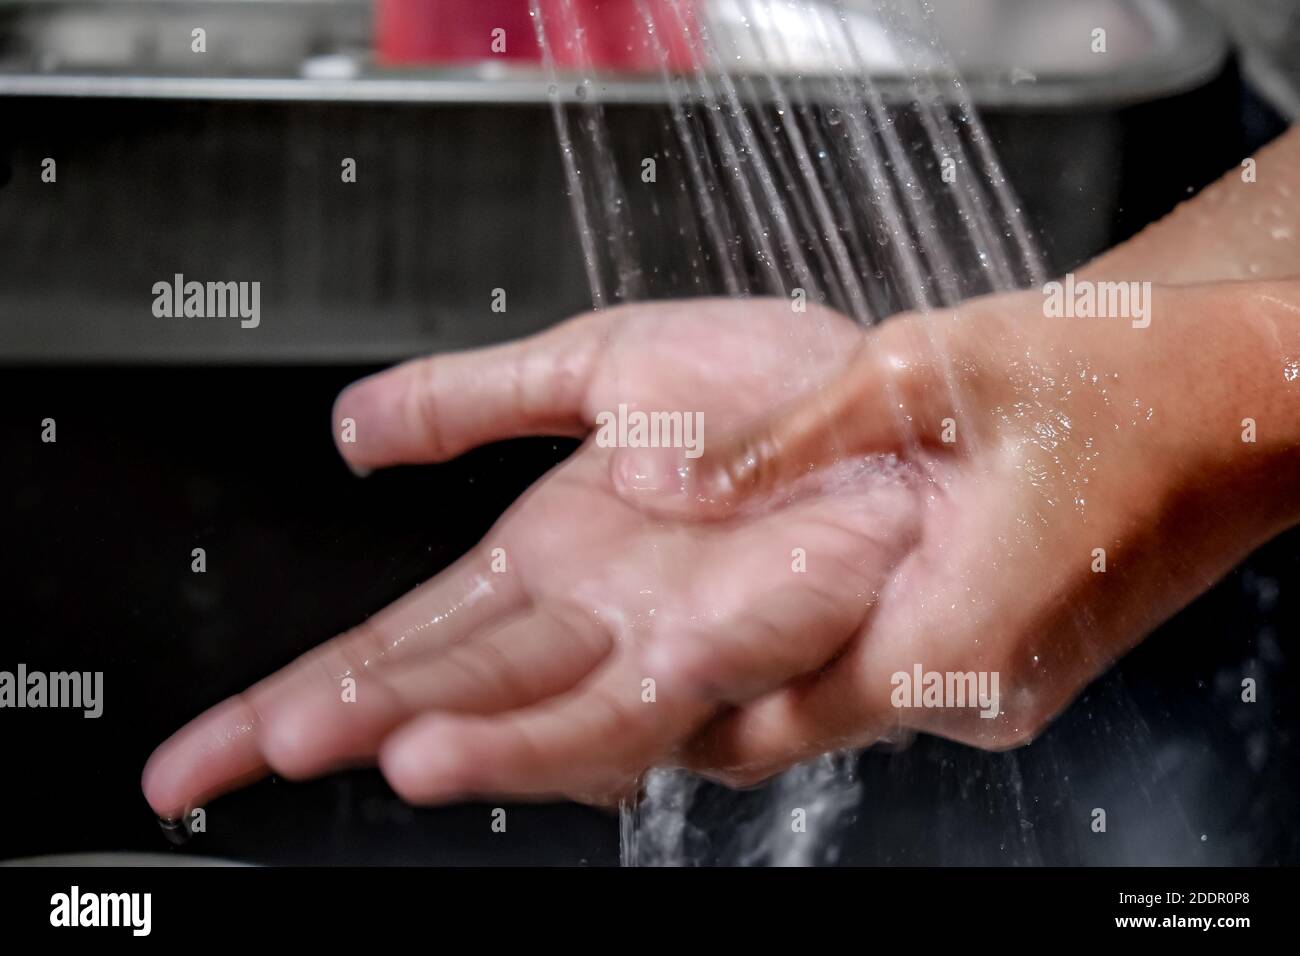 Nahaufnahme Bewegungsunschärfe Bild der Hände unter Dusche von Wasser auf einem Spülbecken gewaschen, um Sauberkeit und Gesundheit zu halten. Gesunder Lebensstil. Stockfoto